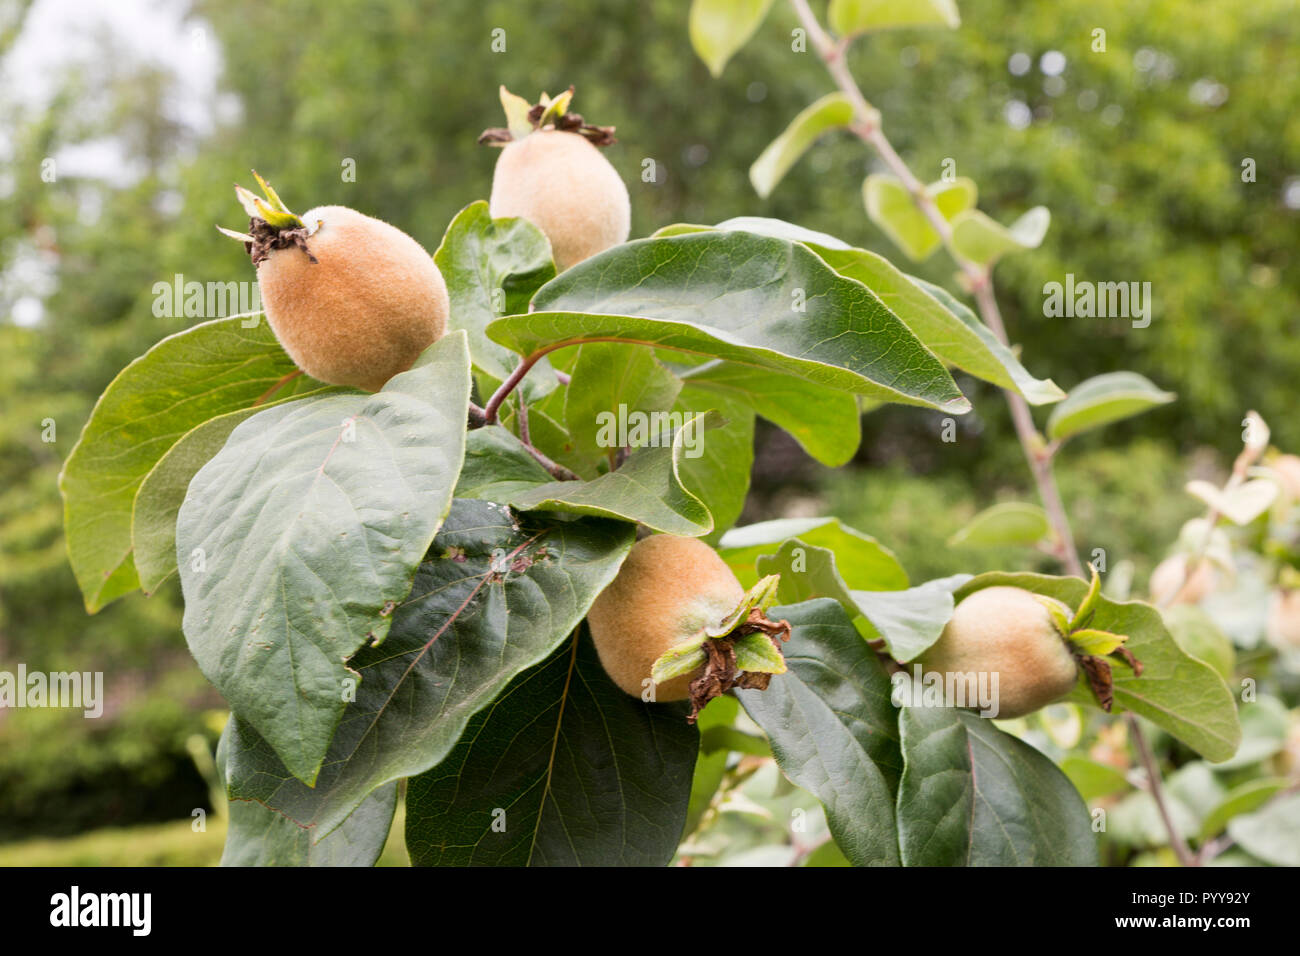 Le mele cotogne Frutta, Cydonia oblonga, cresce sugli alberi, Suffolk, Inghilterra, Regno Unito Foto Stock